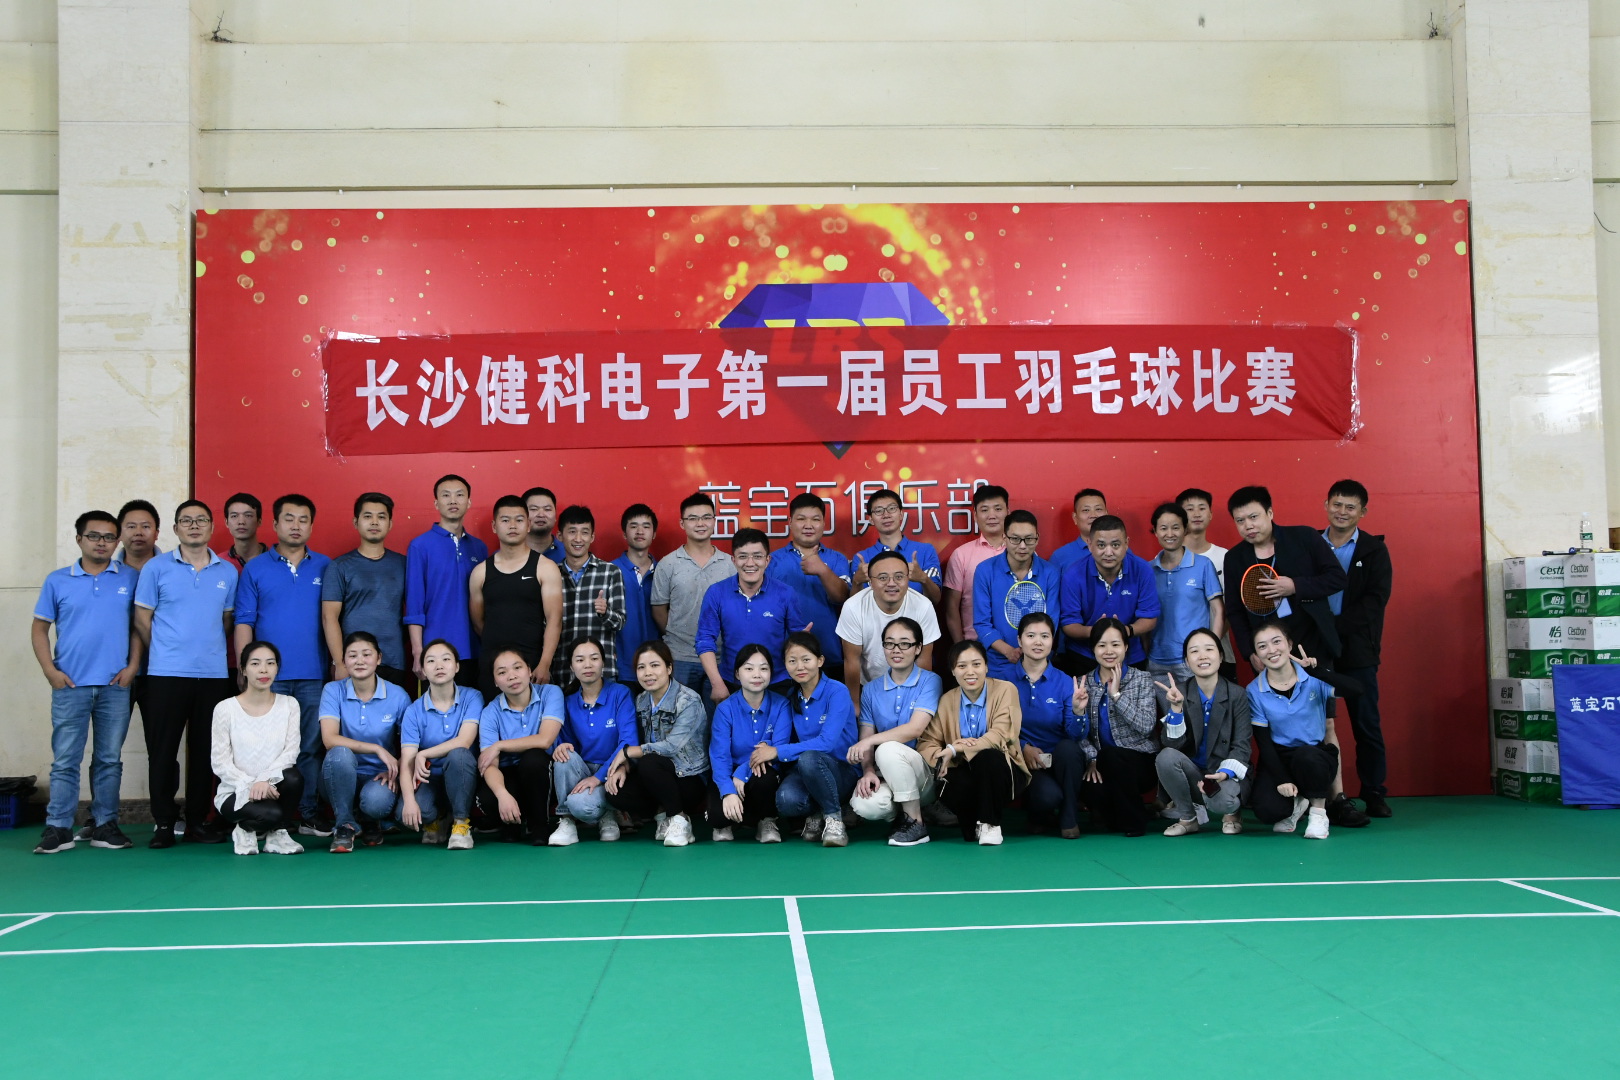 【健科简讯】长沙市健科电子第一届员工羽毛球比赛成功举办